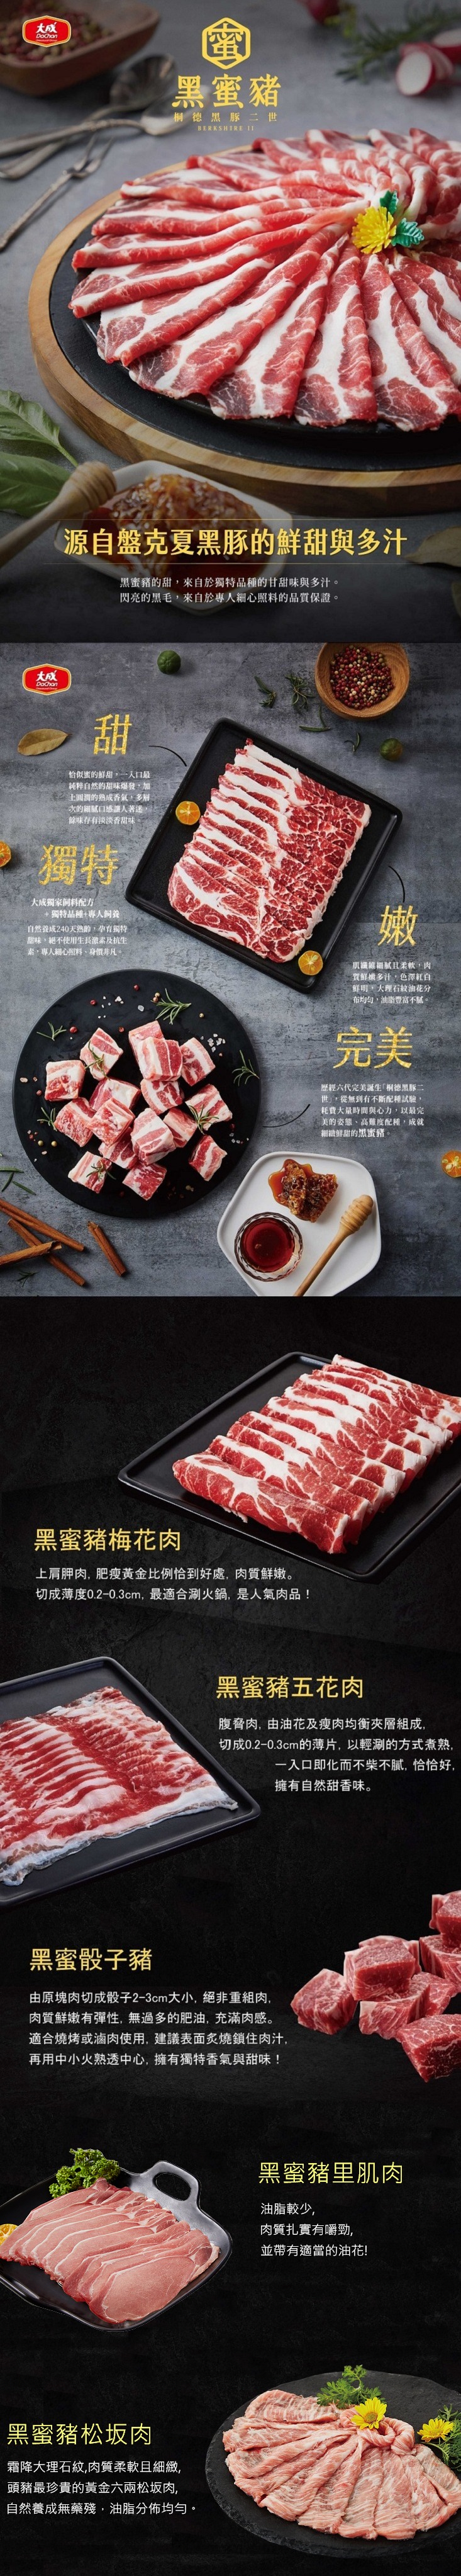 【大成食品】桐德黑蜜豬火鍋肉片200g 梅花/五花/里肌任選 台灣豬 露營 烤肉